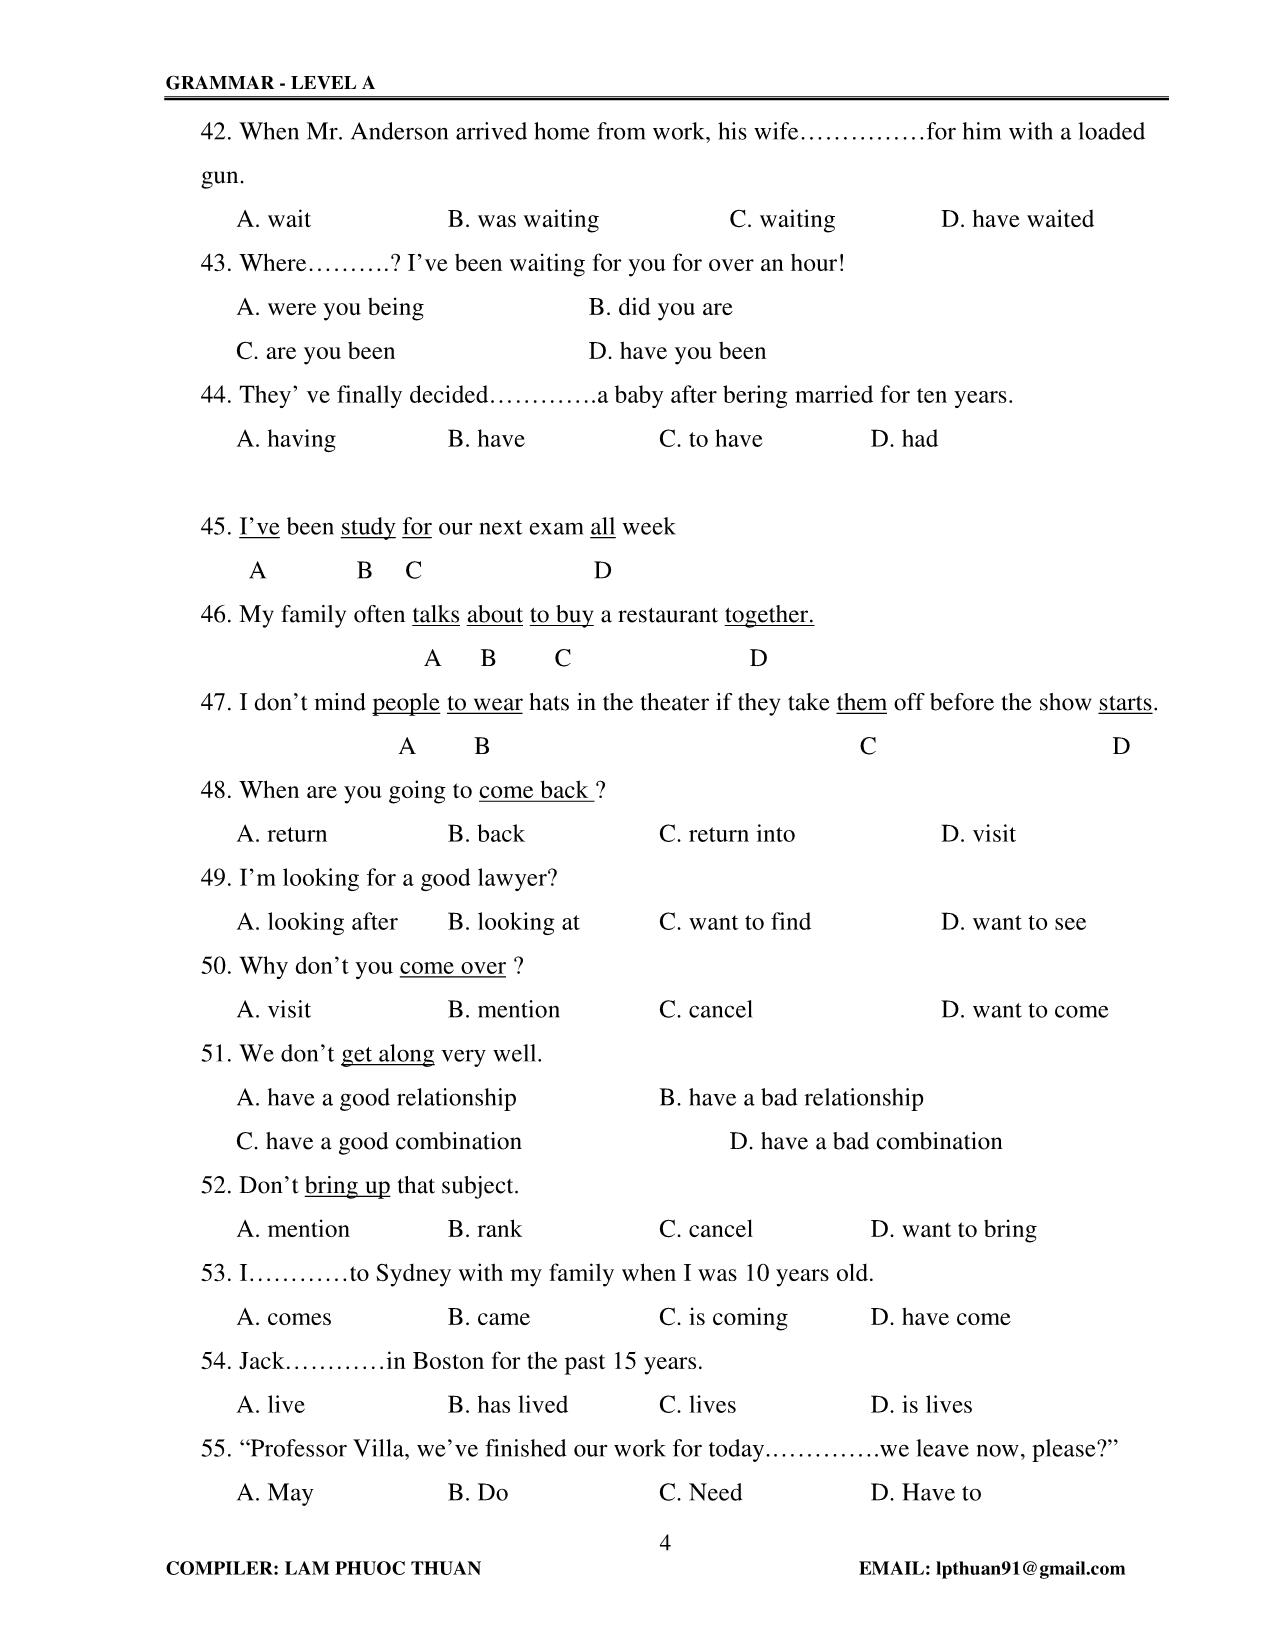 Tiếng Anh - Grammar level A trang 4